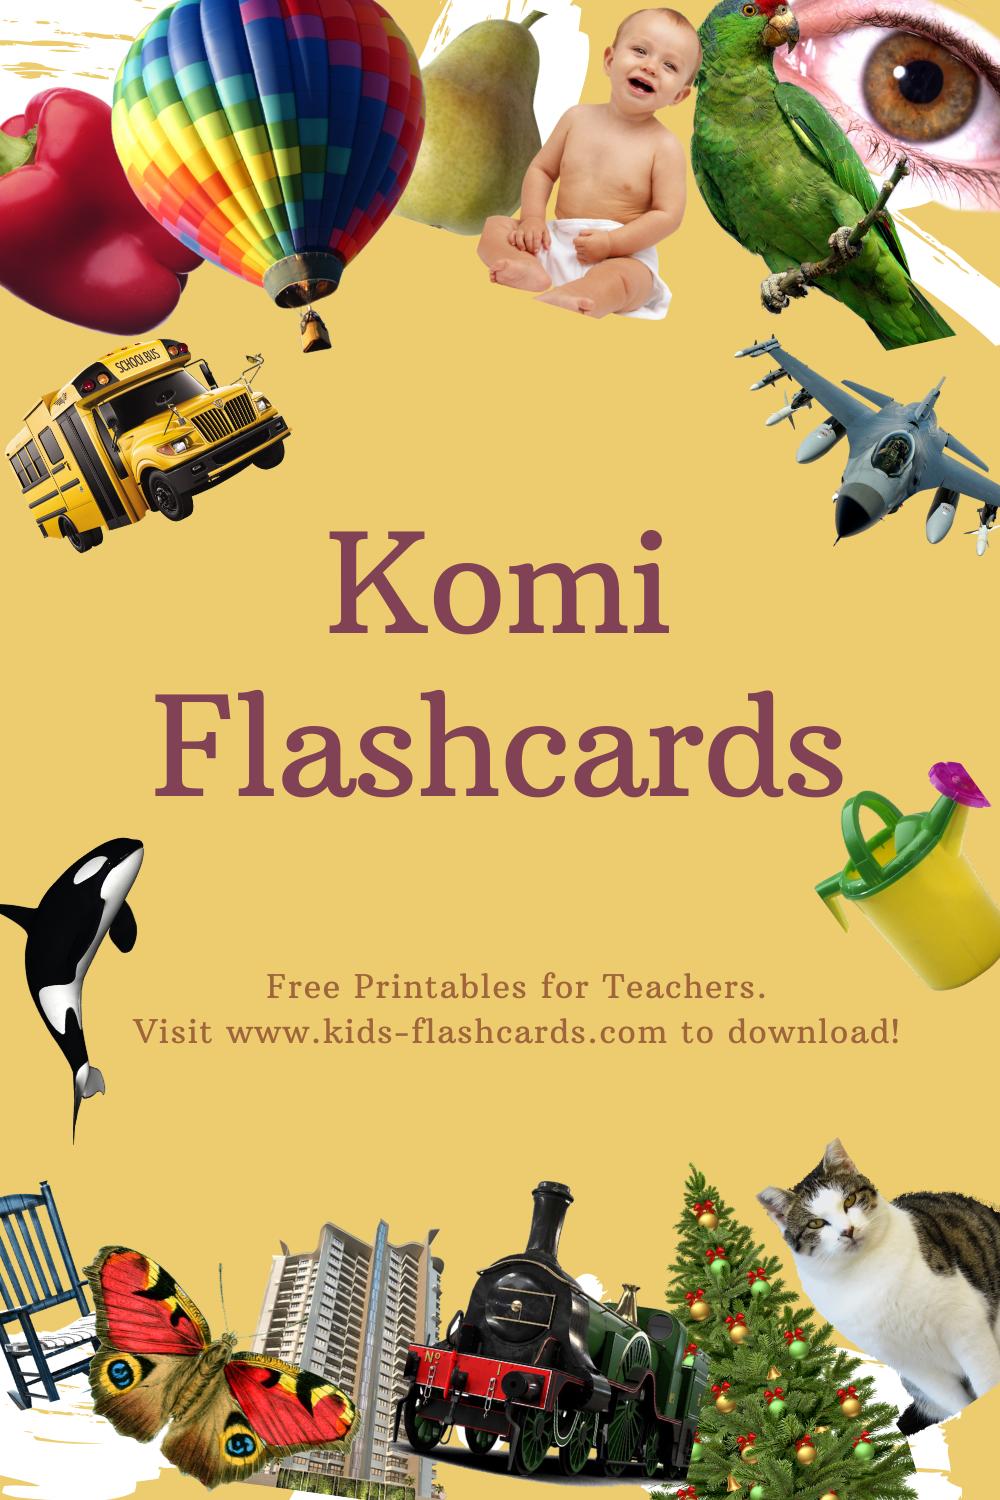 Worksheets to learn Komi language